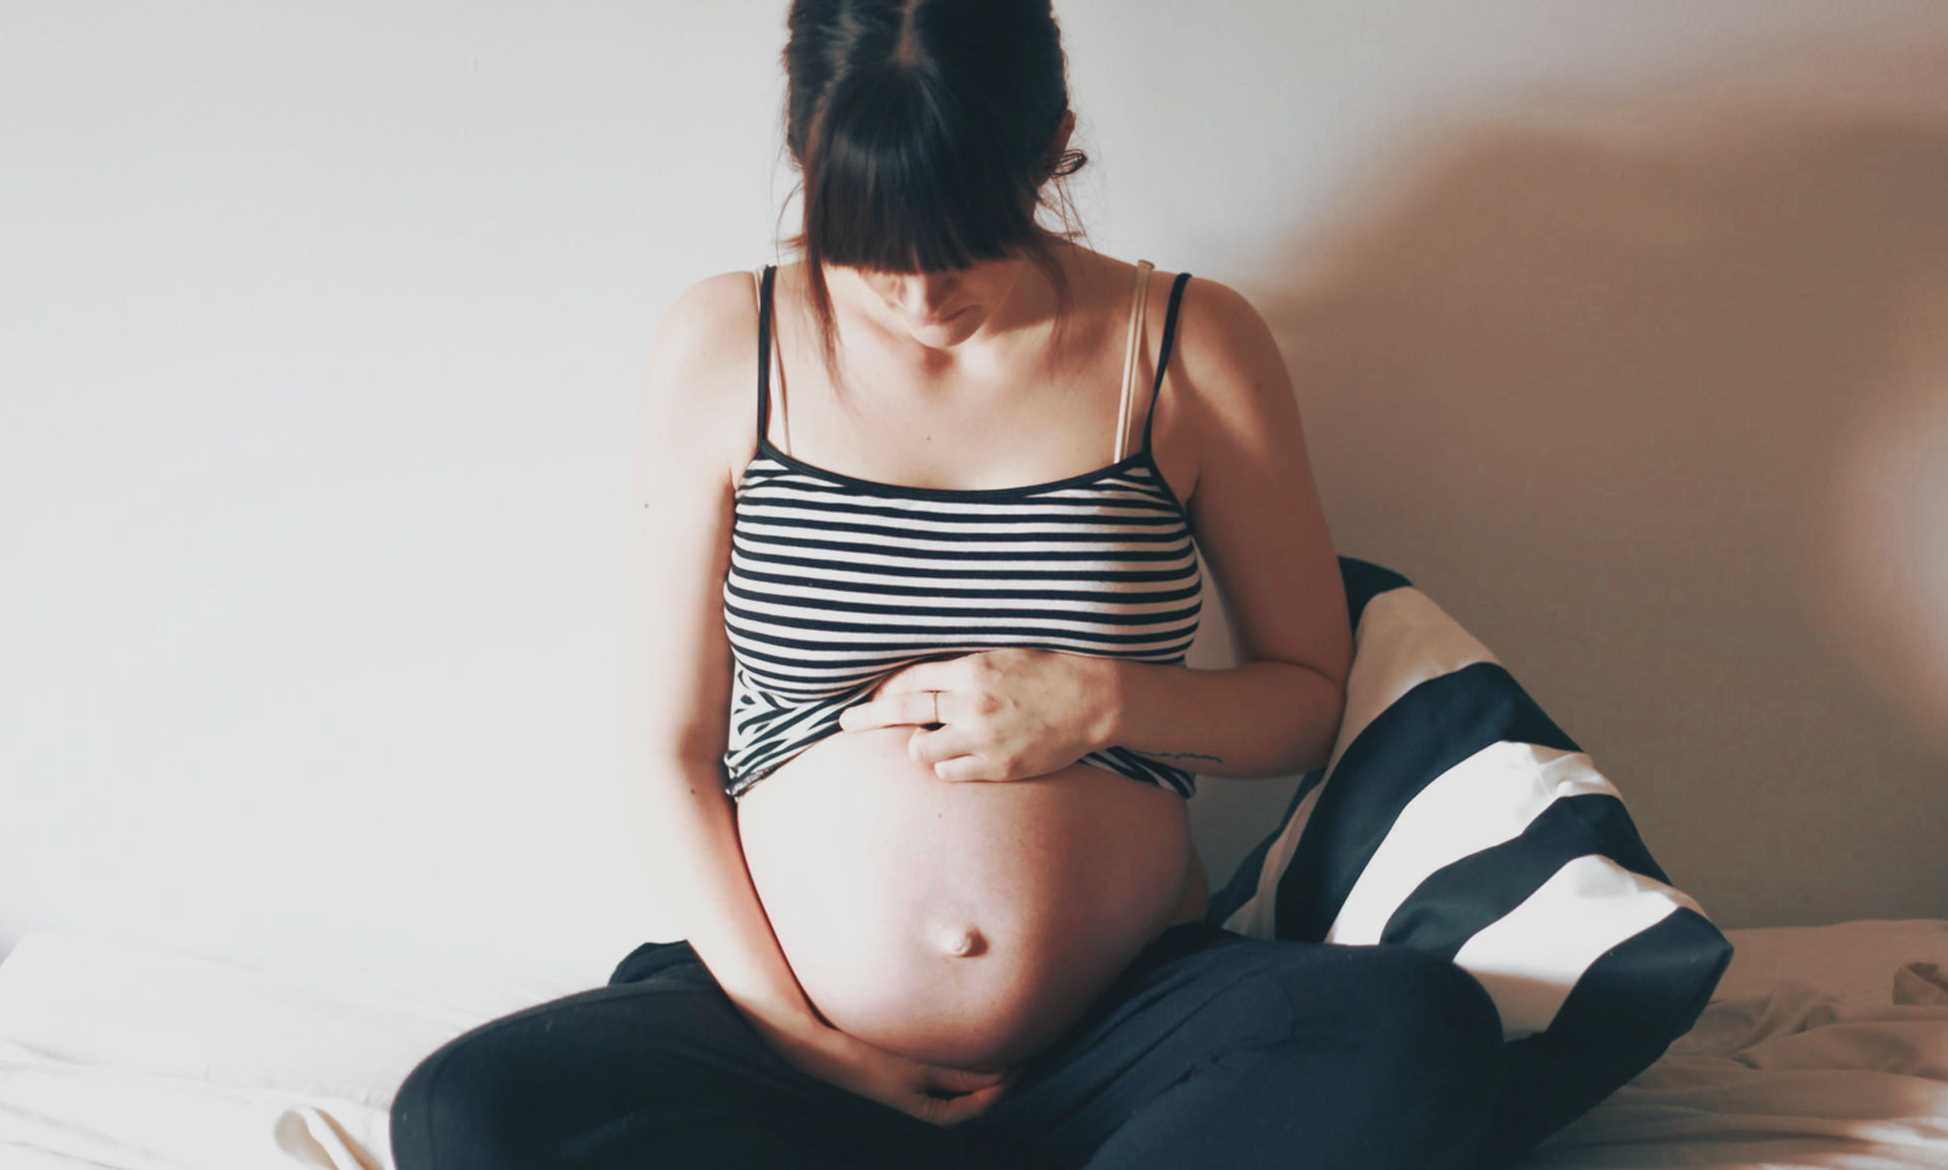 Тянущие боли внизу живота как при месячных на 39 неделе беременности: причины и способы избавления